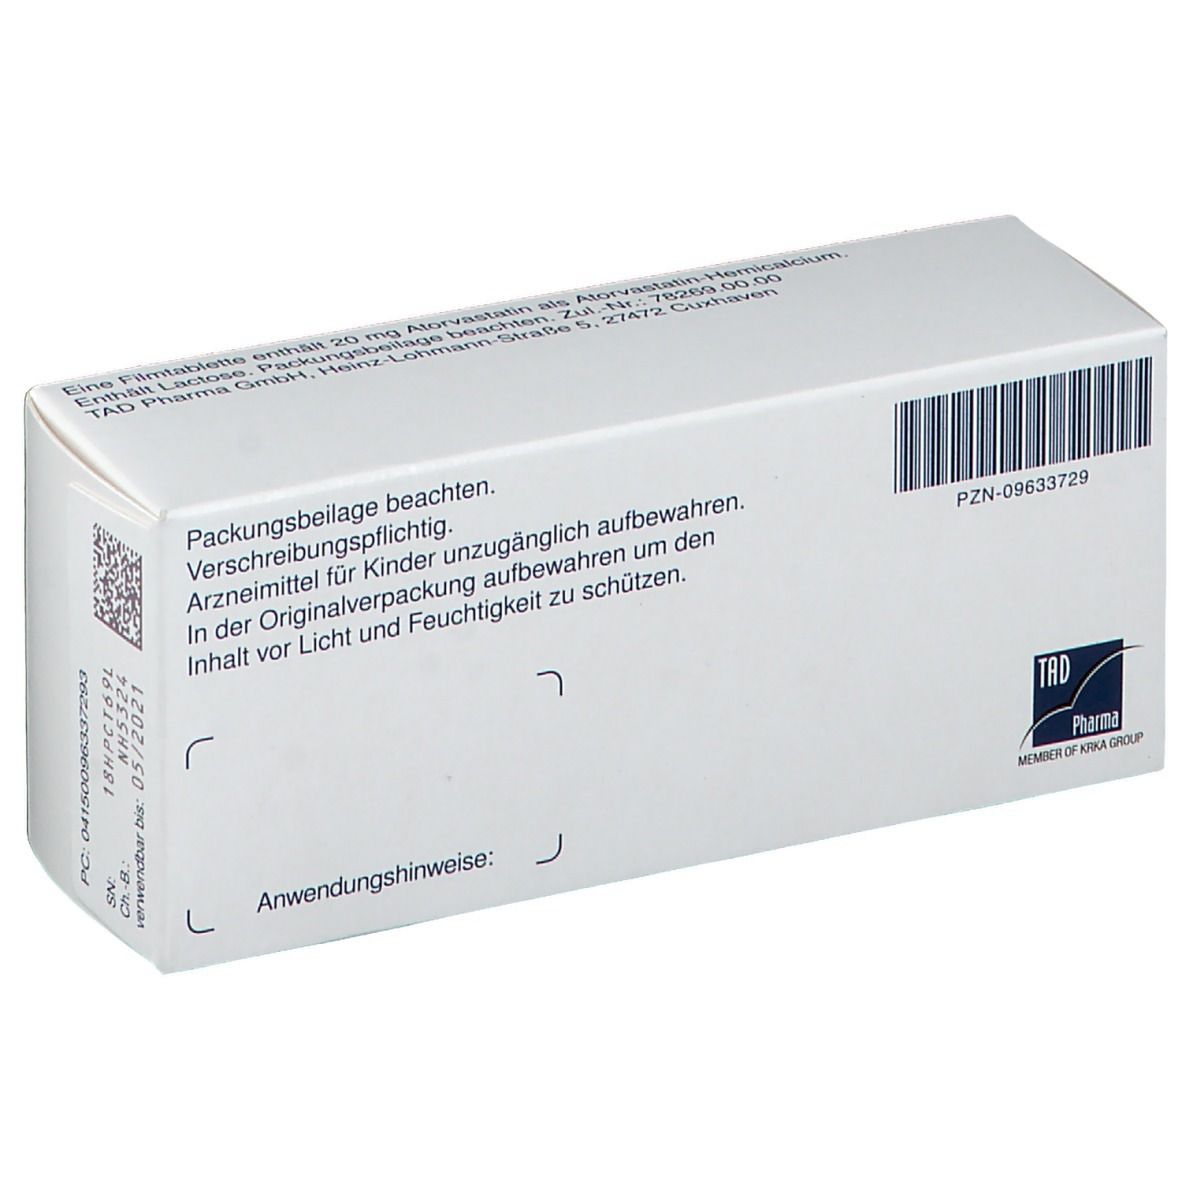 Atoris® 20 mg